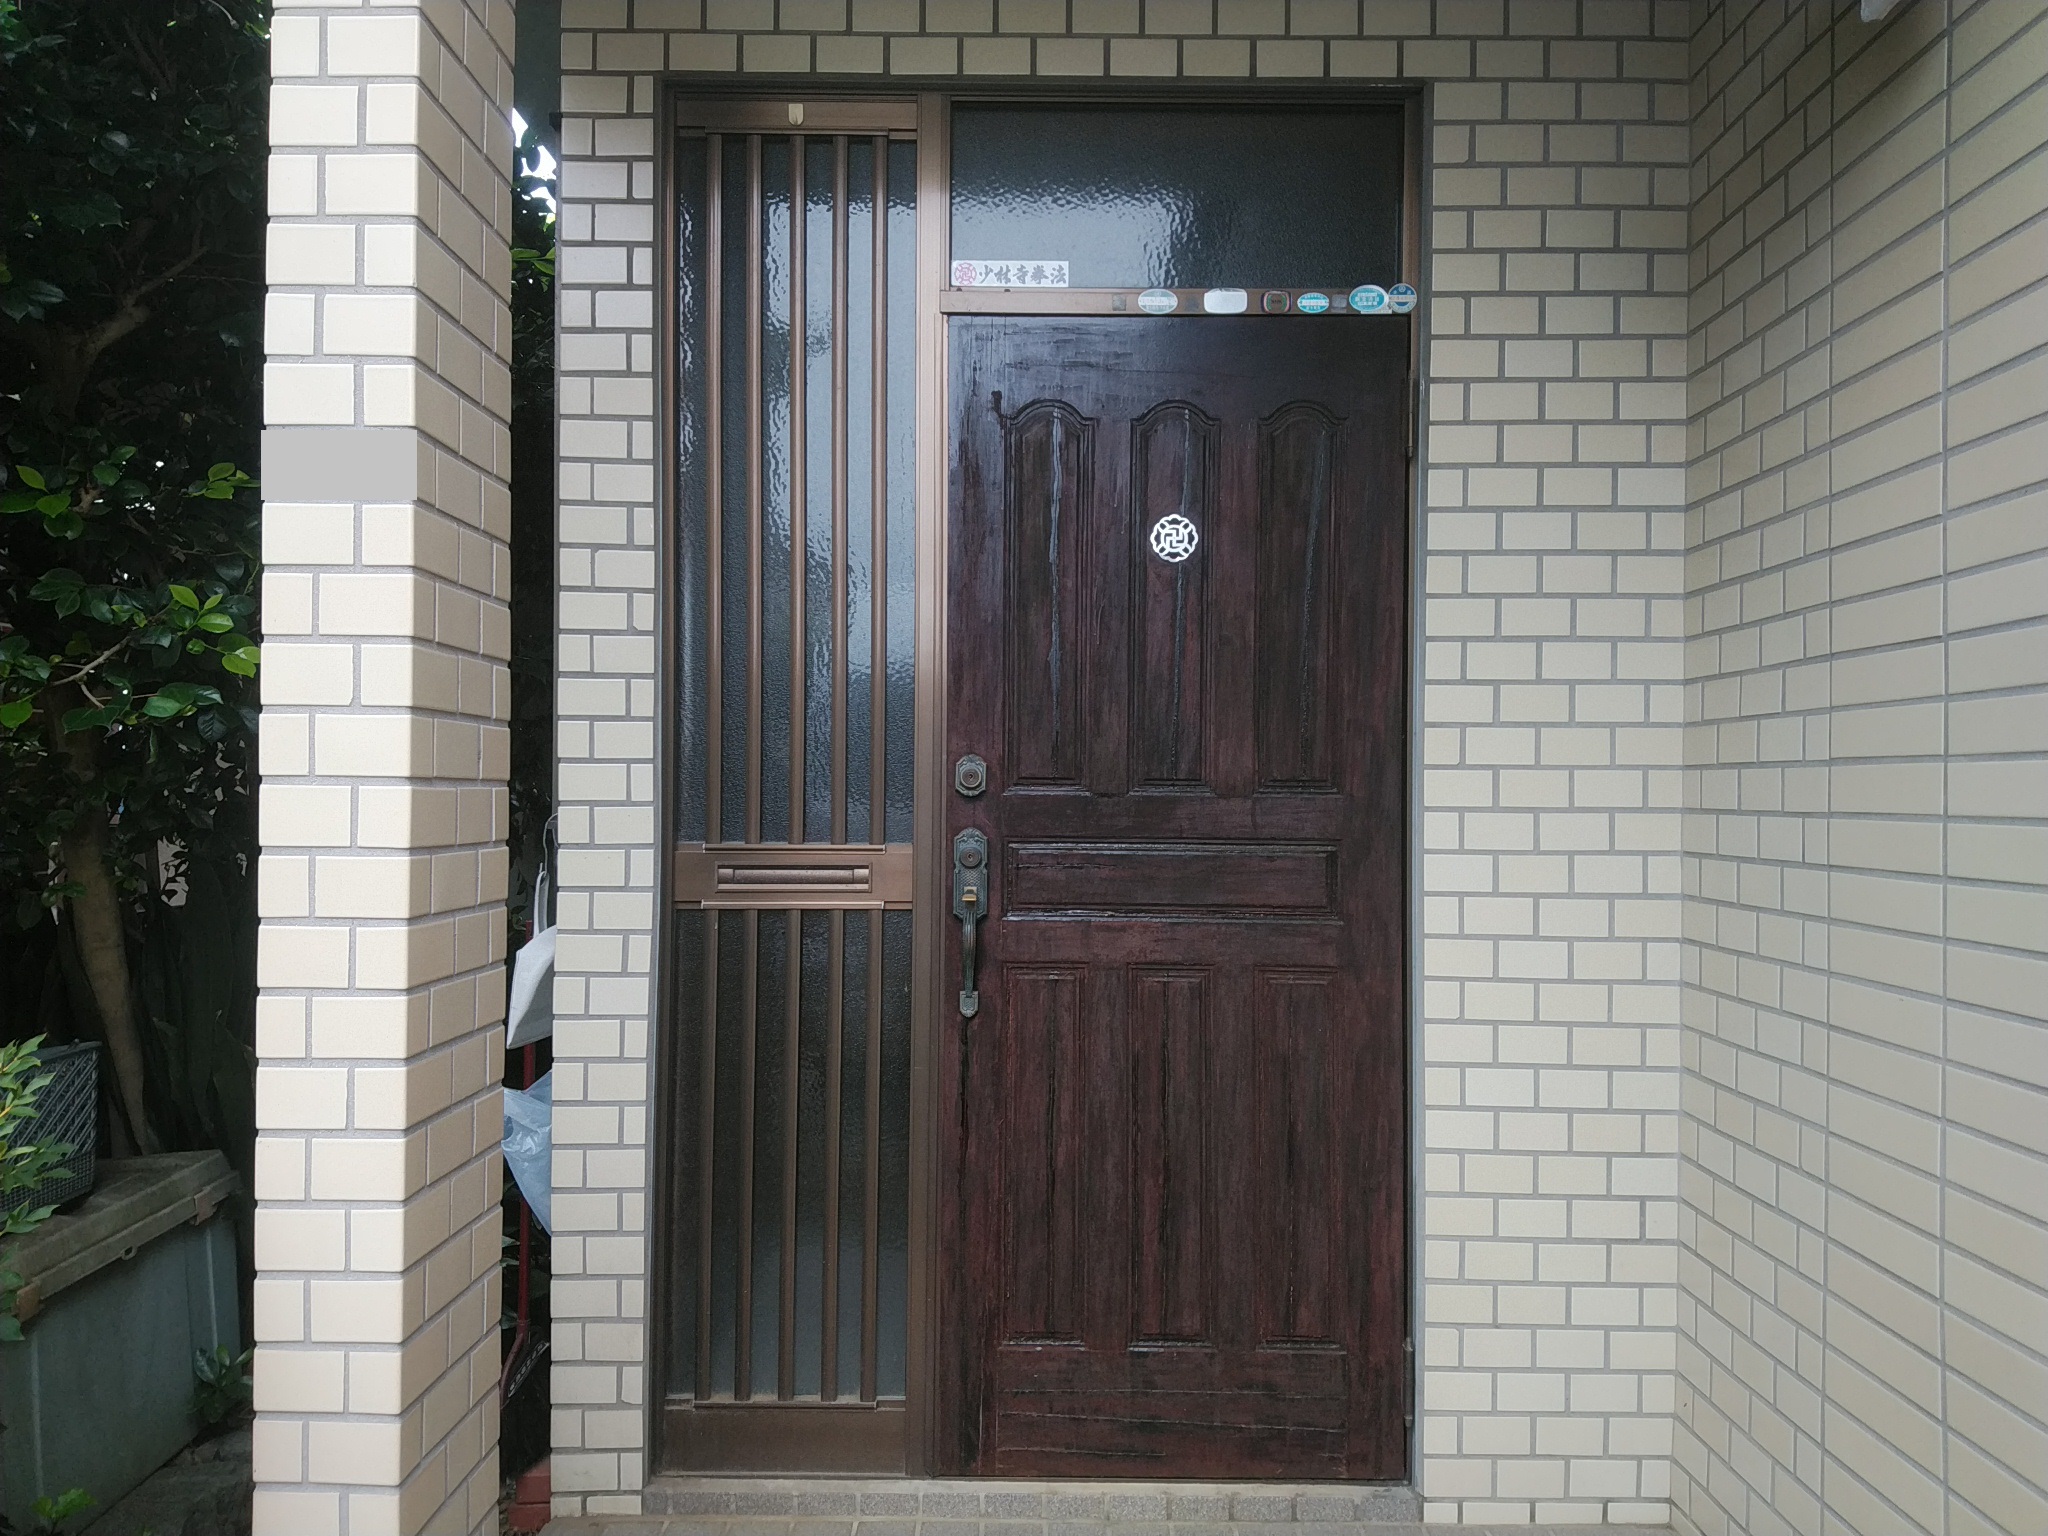 同じ片袖ランマ付きのドアでもドアの大きさを大きくすると高級感が増します【LIXILリシェントM78型】玄関ドアのリフォームなら玄関ドア